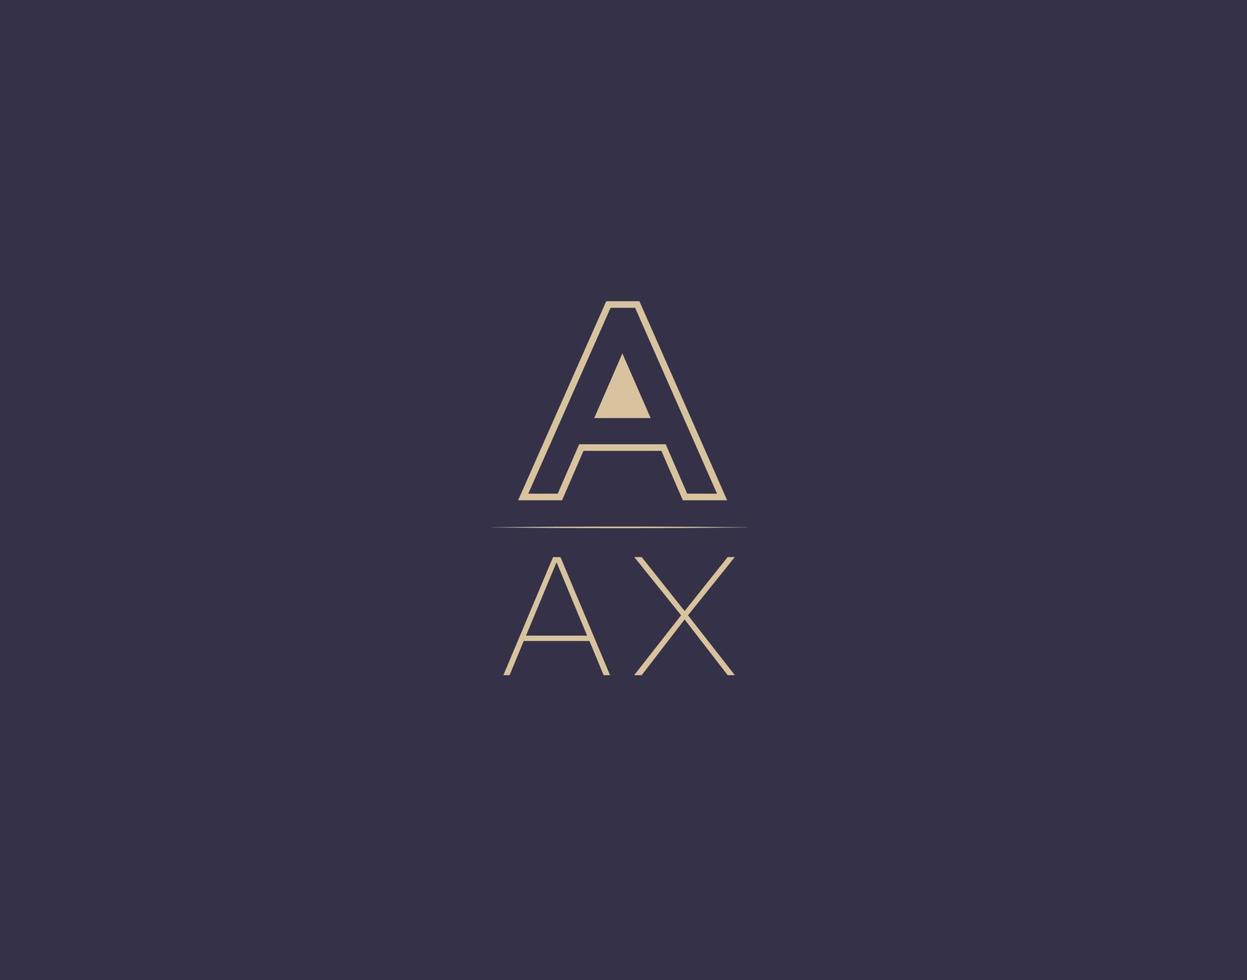 aax letter logo design moderne minimalistische vektorbilder vektor